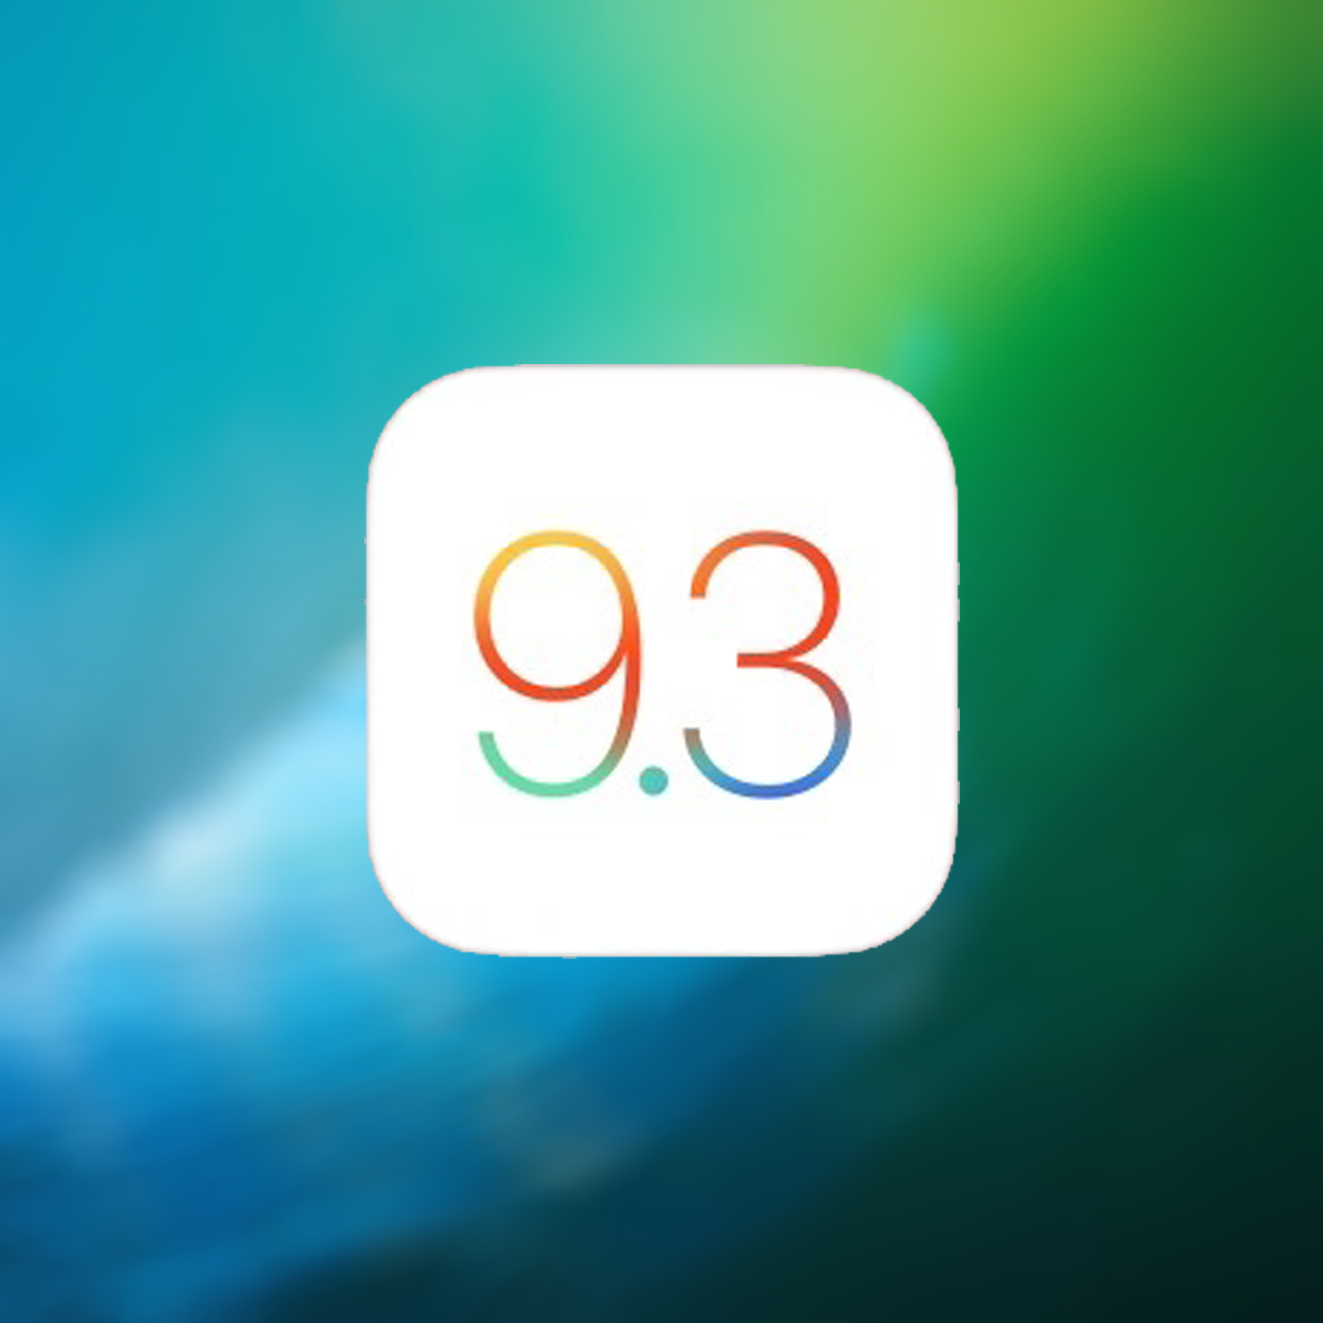 iOS 9.3 beschikbaar